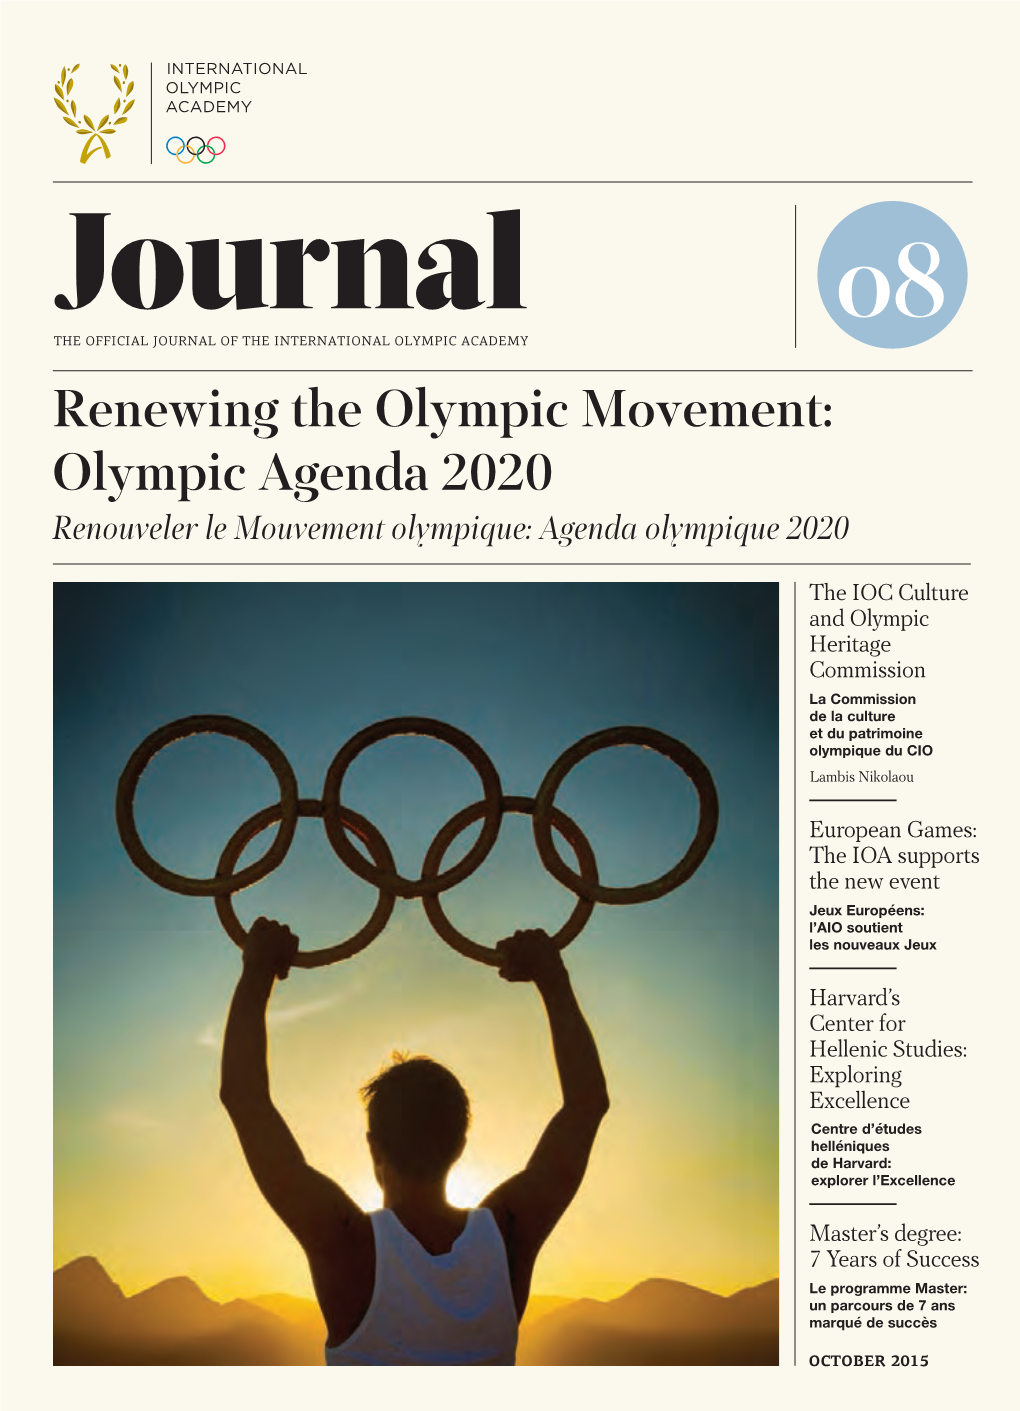 Le Mouvement Olympique: Agenda Olympique 2020